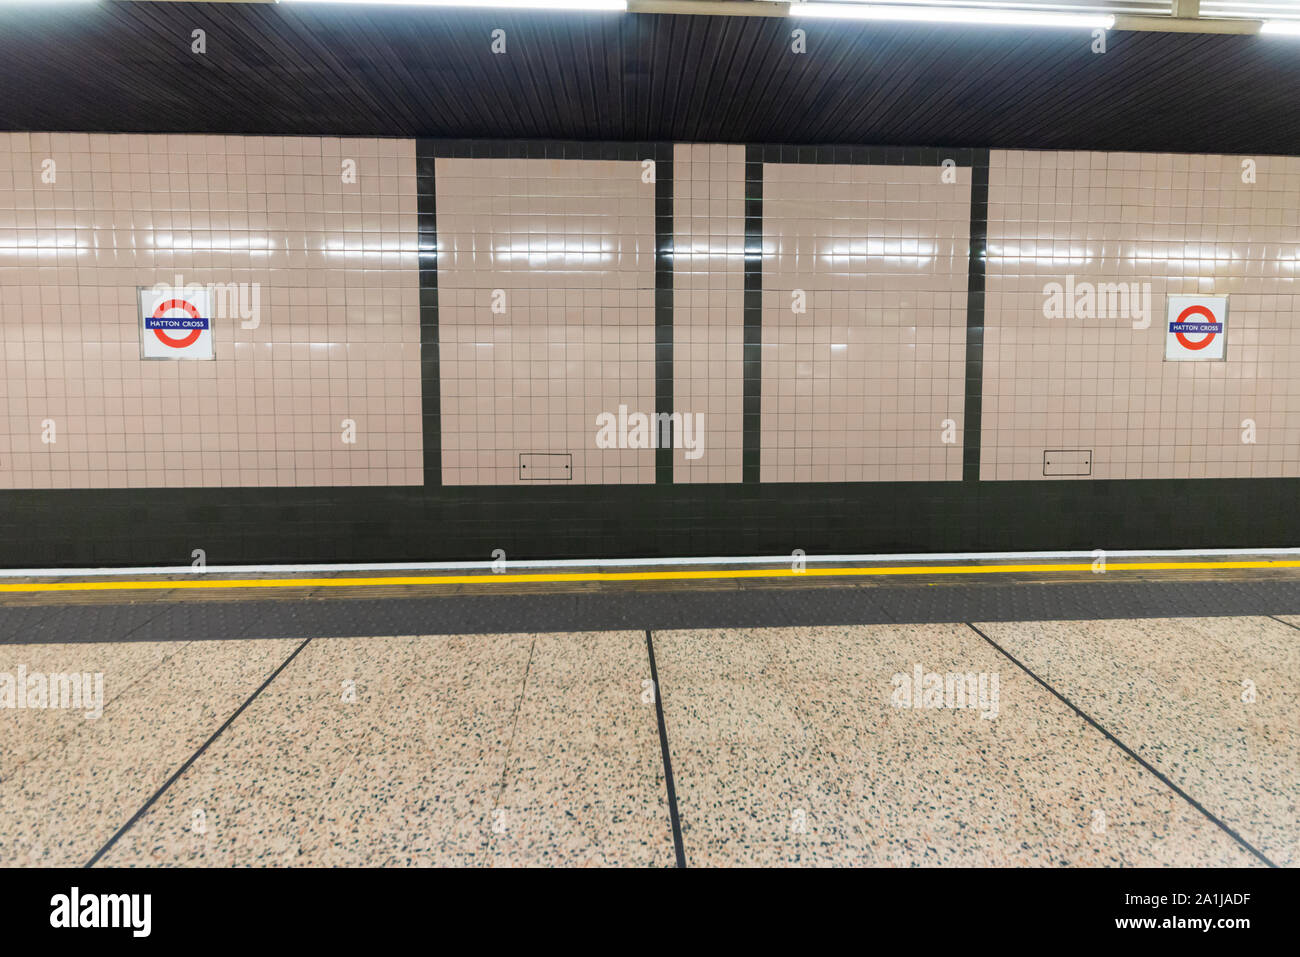 Hatton Cross Tube Station, prendere la Piccadilly Line della metropolitana di Londra di sistema di treno vicino a Heathrow di Londra, Regno Unito. La stazione della metropolitana di segno e di piastrelle. Hillingdon Foto Stock